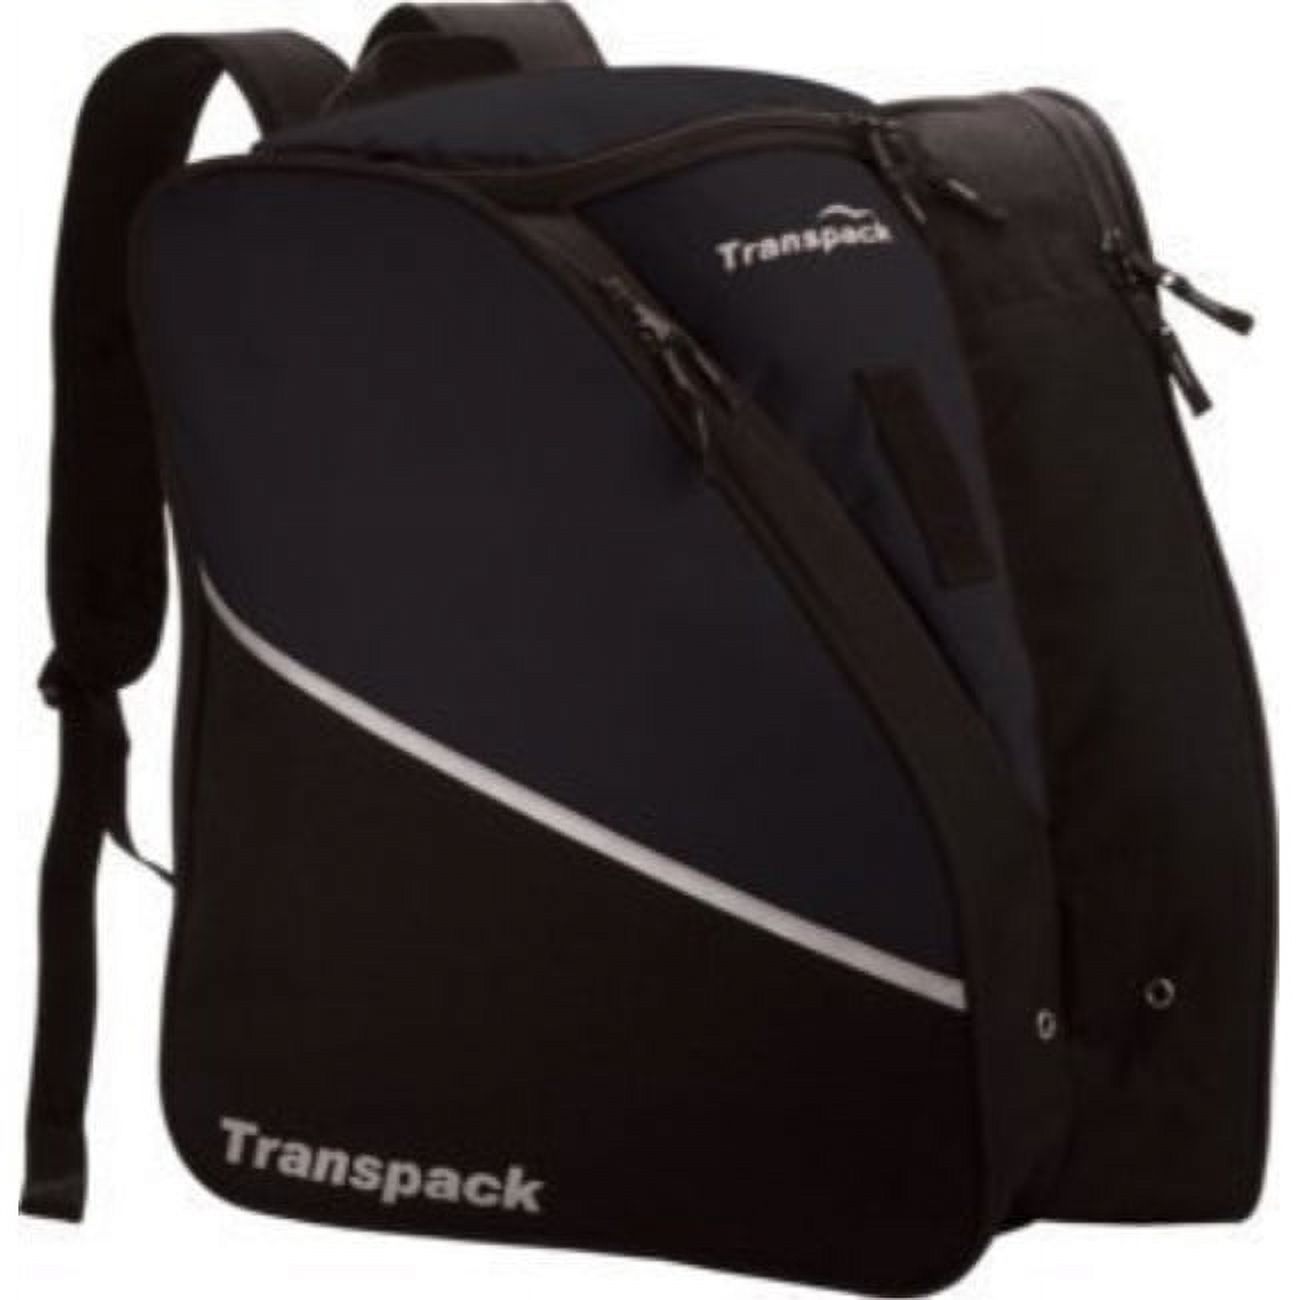 Transpack Edge Boot Bag-Black - image 1 of 8